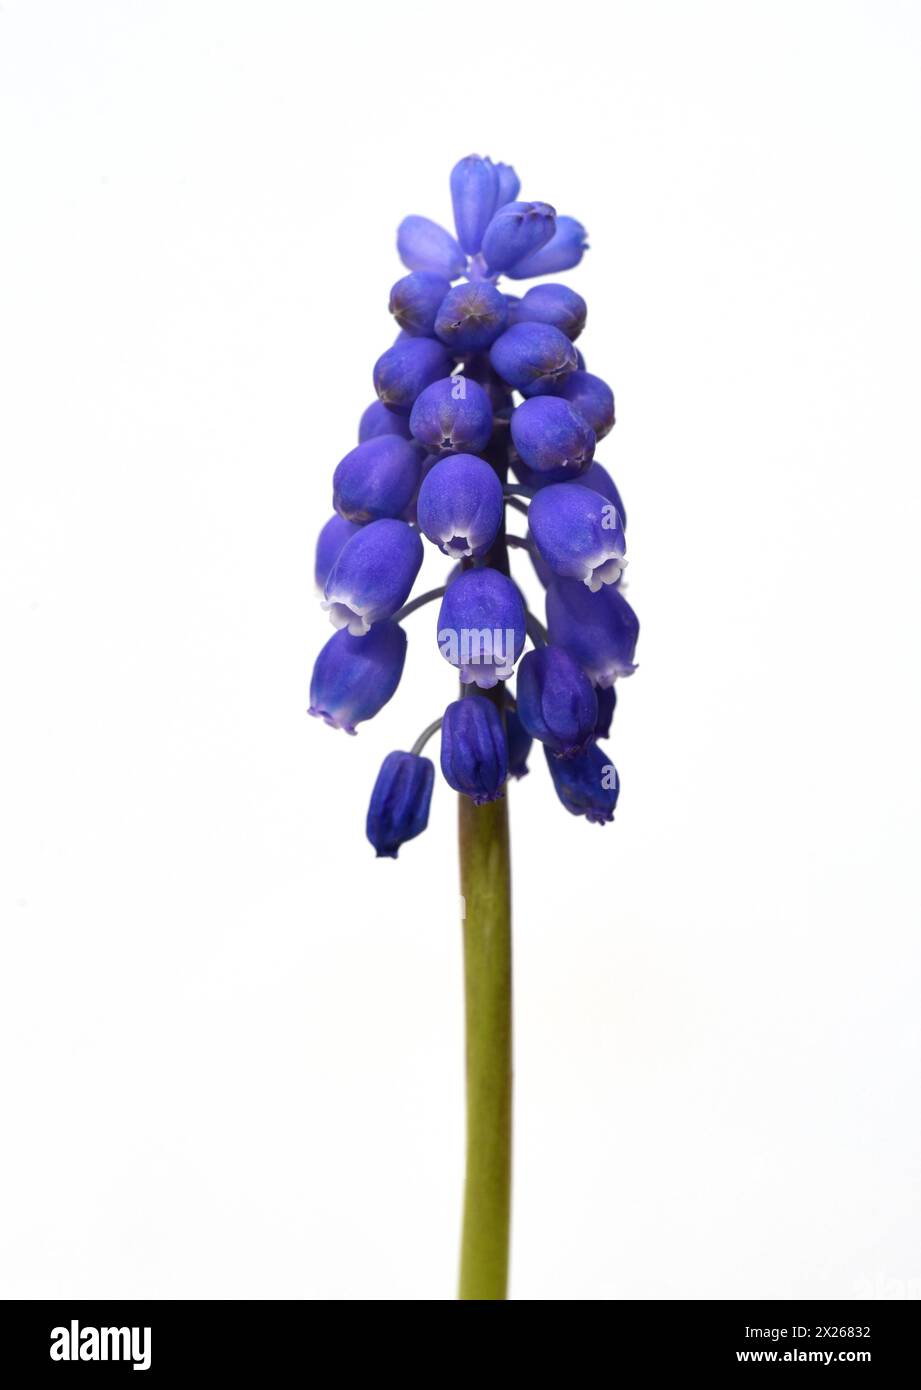 Traubenhyazinthe, Muscari latifolium, ist eine wilde wachsende Blume mit blauen Blueten. Die Traubenhyazinthe, Muscari latifolium, ist eine blaue Blume Stockfoto